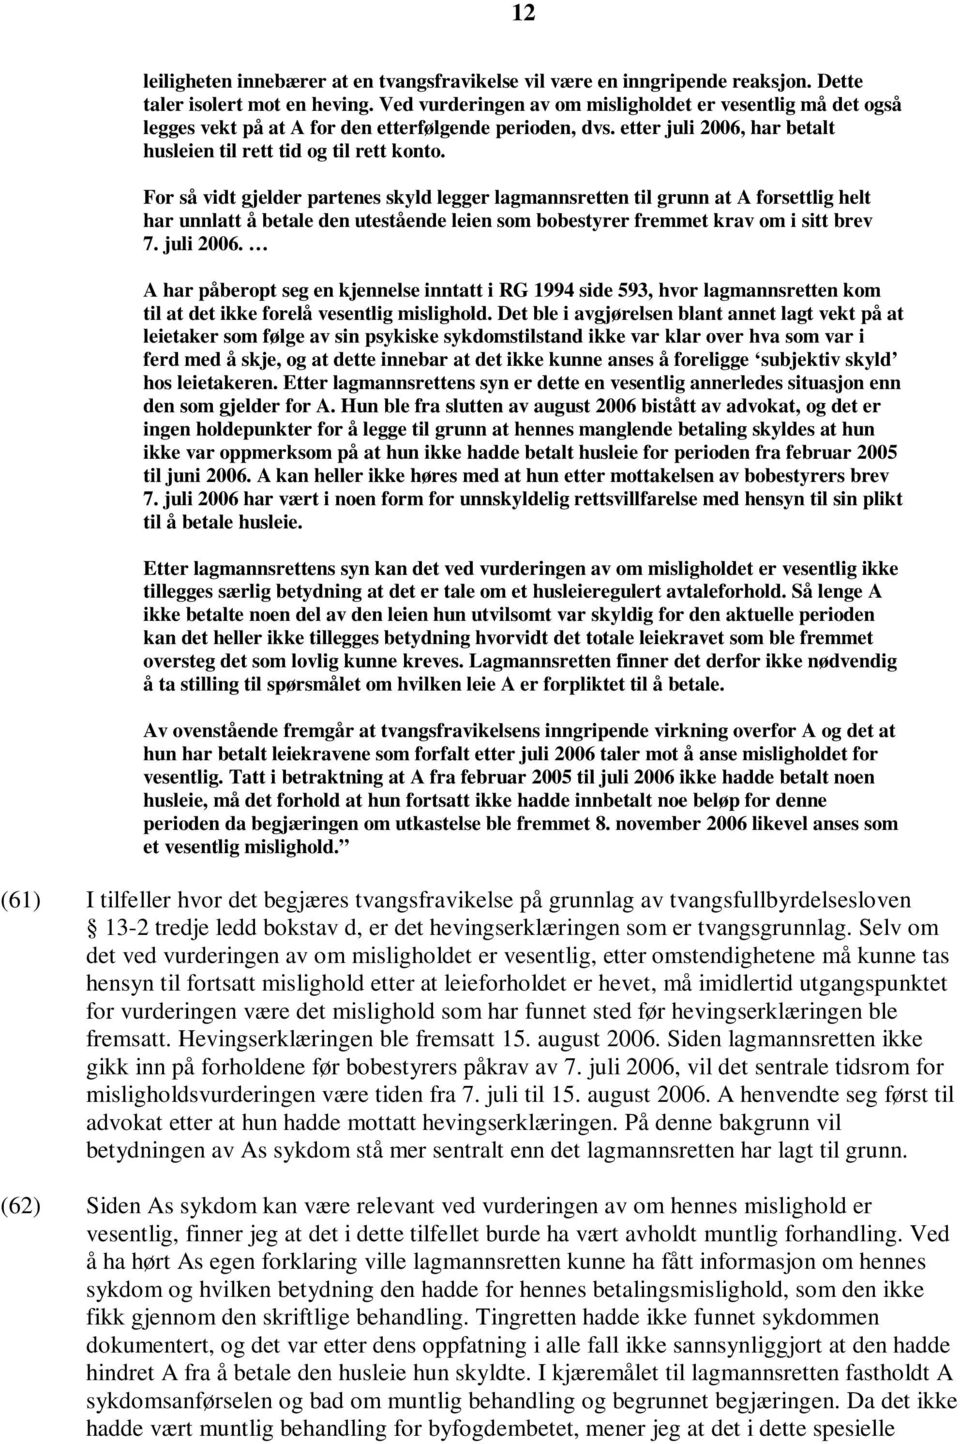 For så vidt gjelder partenes skyld legger lagmannsretten til grunn at A forsettlig helt har unnlatt å betale den utestående leien som bobestyrer fremmet krav om i sitt brev 7. juli 2006.